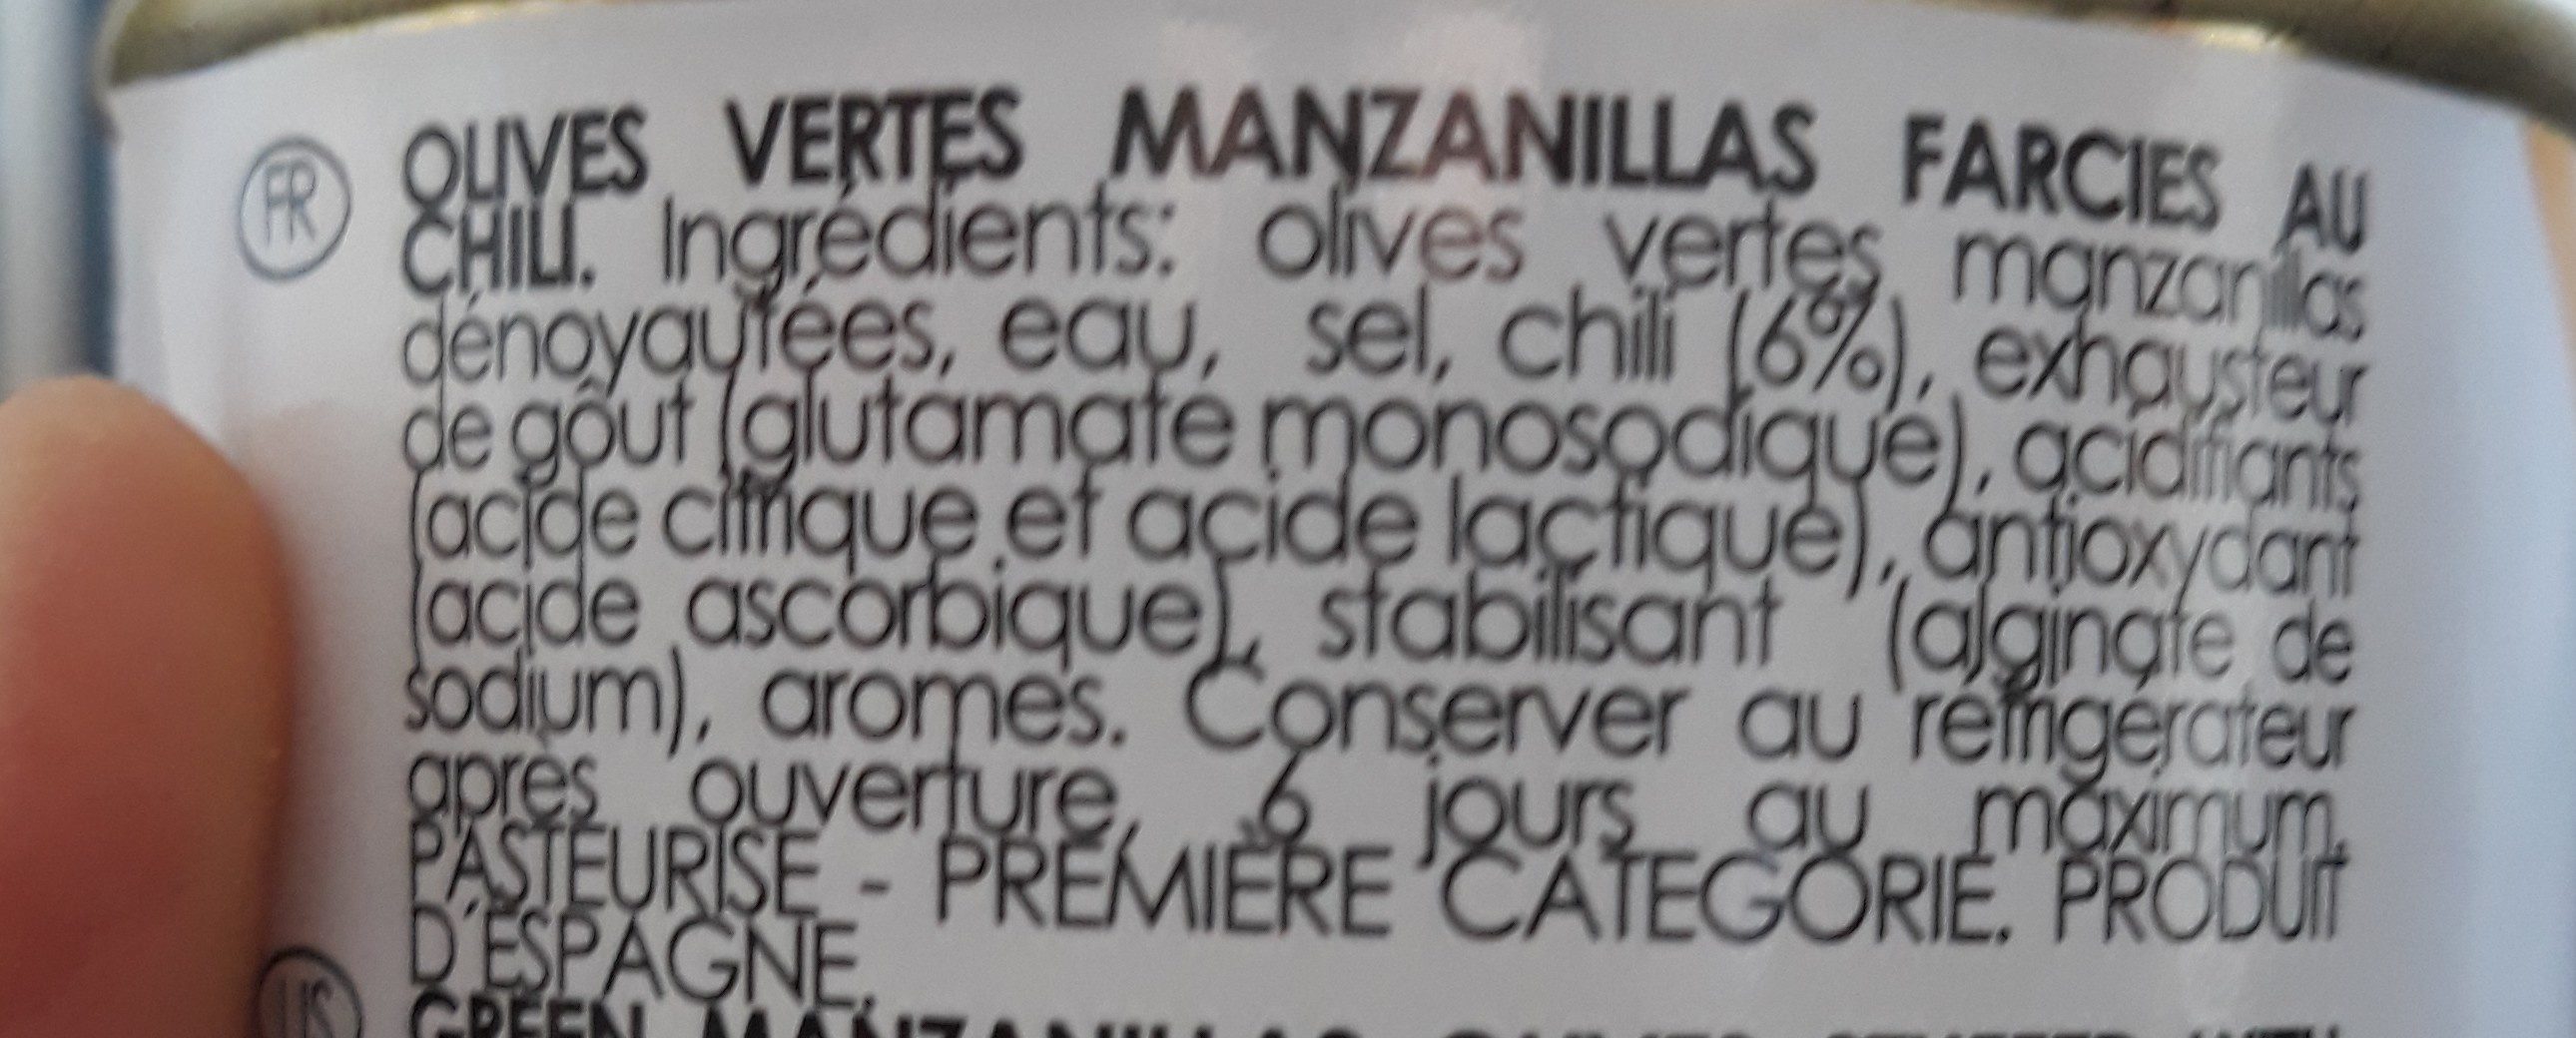 Olives vertes chili - Ingredients - fr